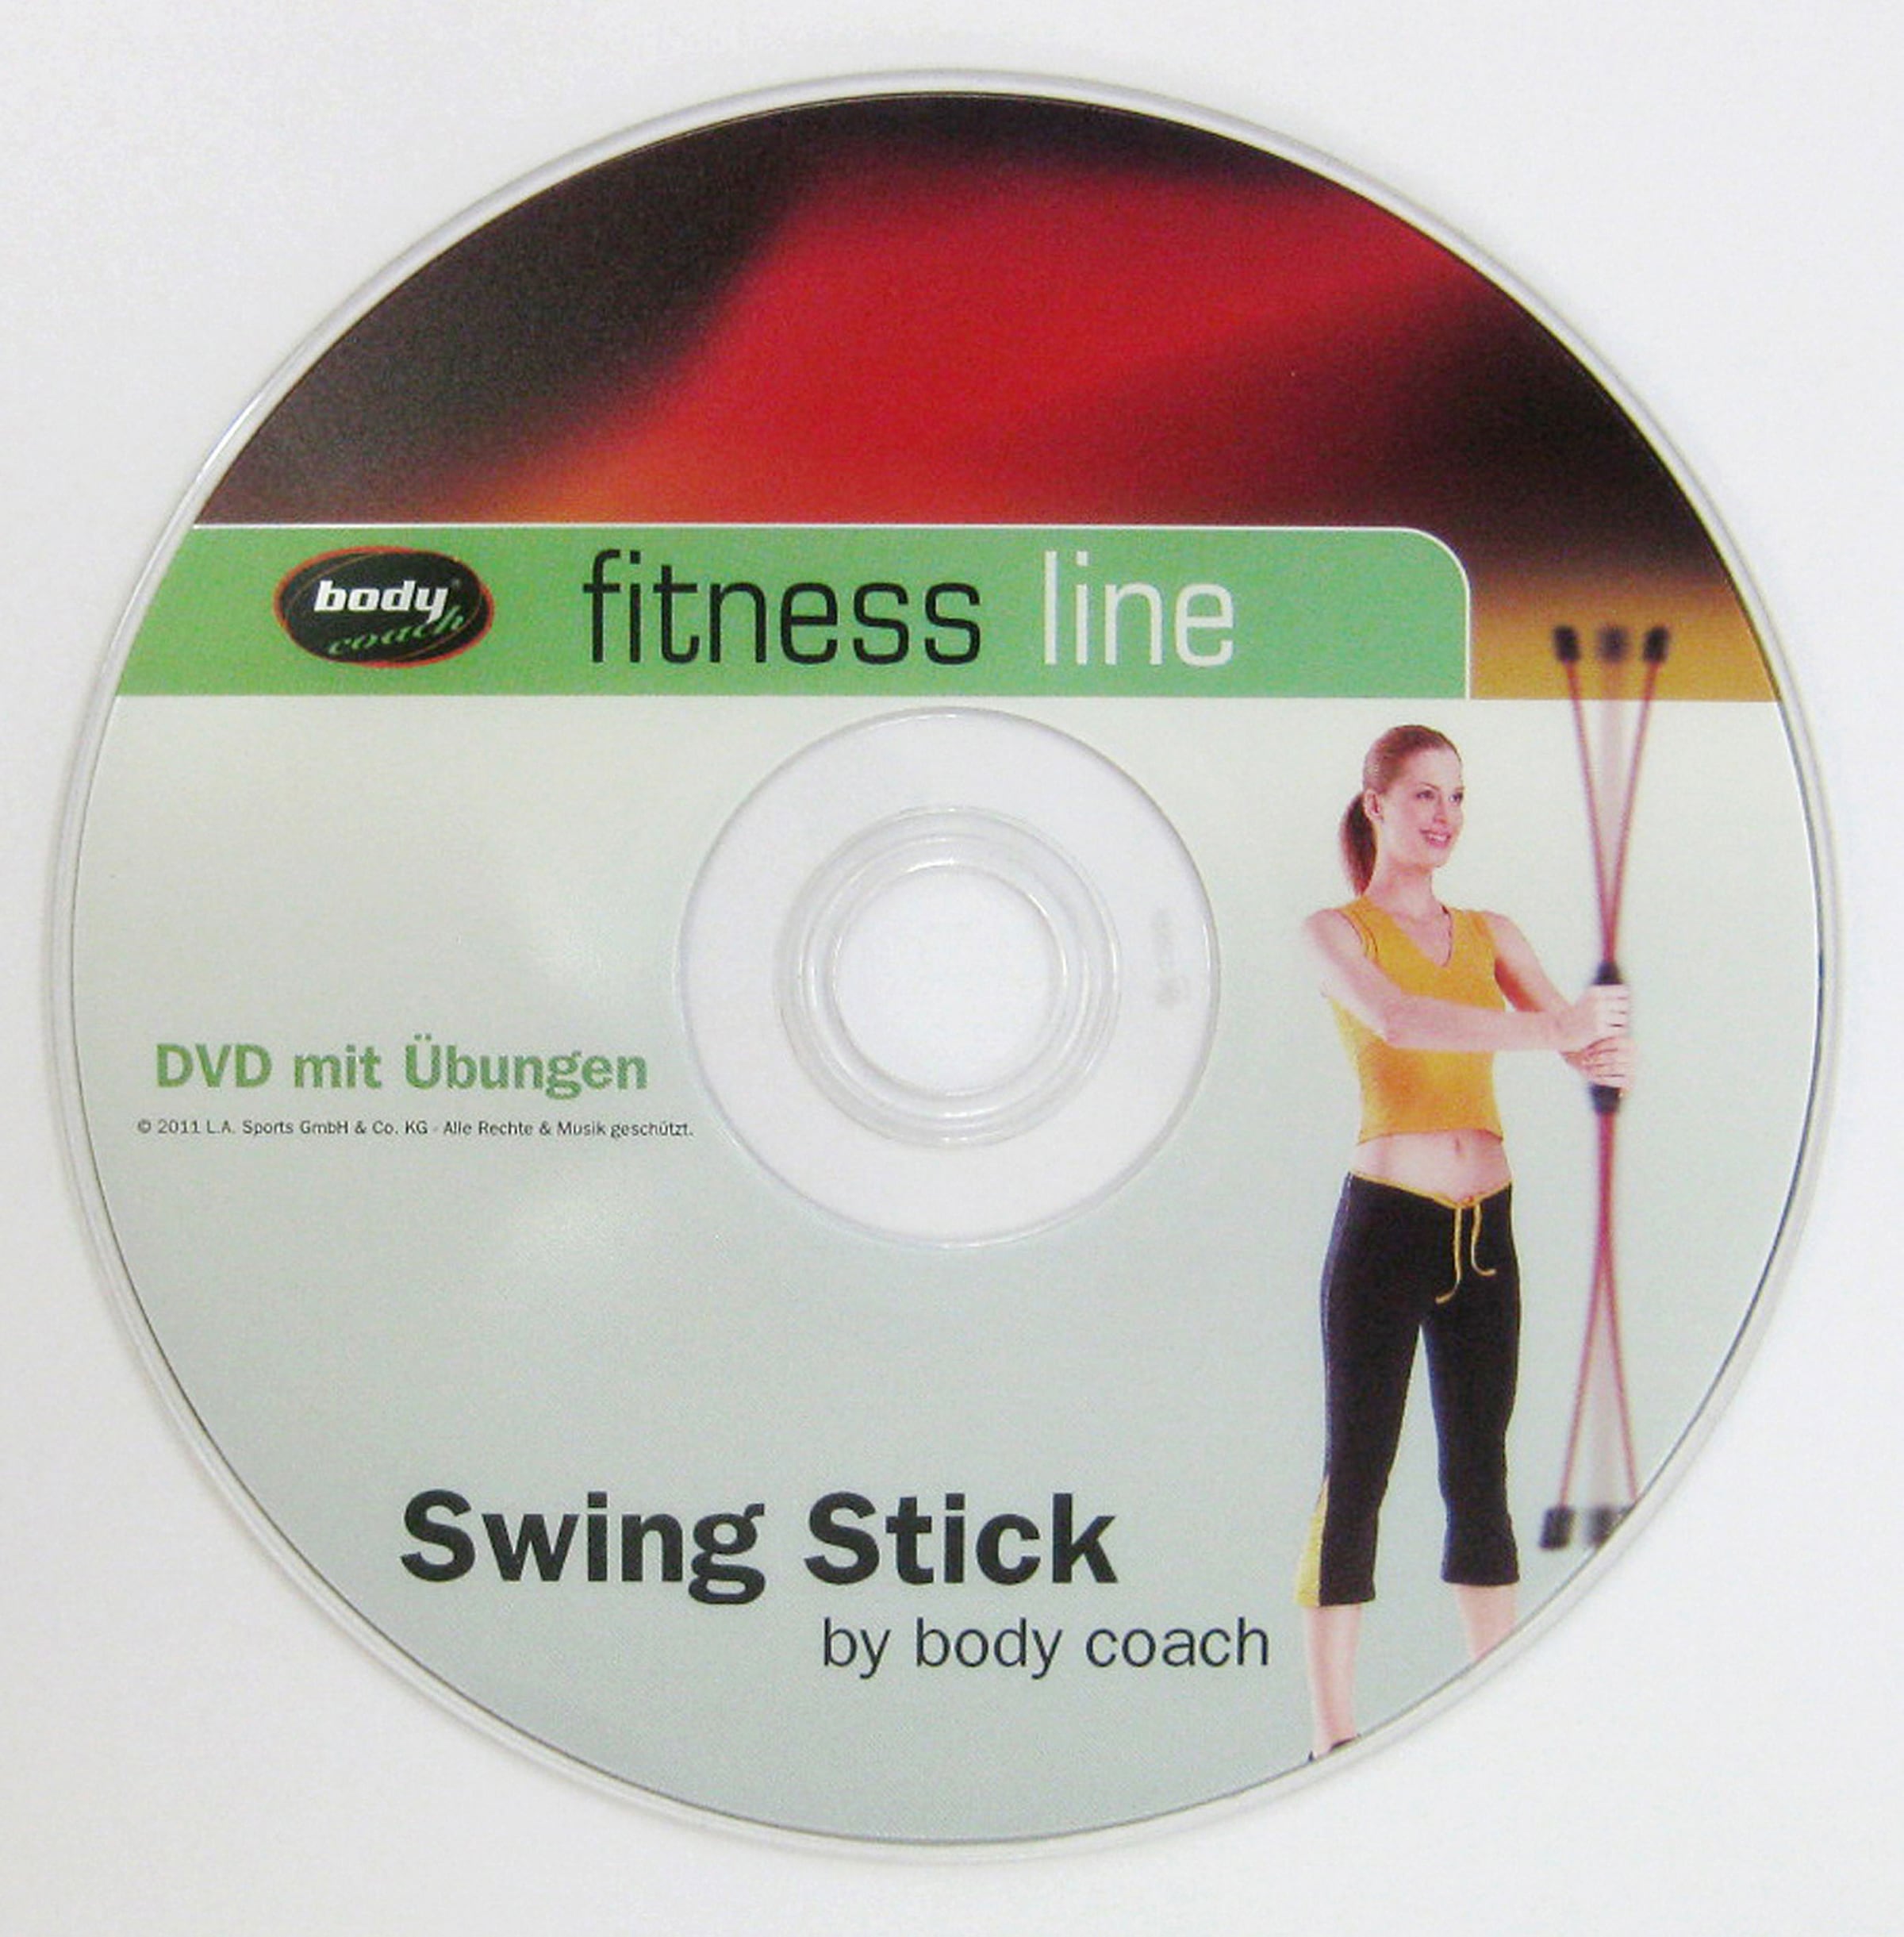 auf Swingstick, OTTO DVD) (Inklusive body | bei OTTO Video-Anleitung coach kaufen